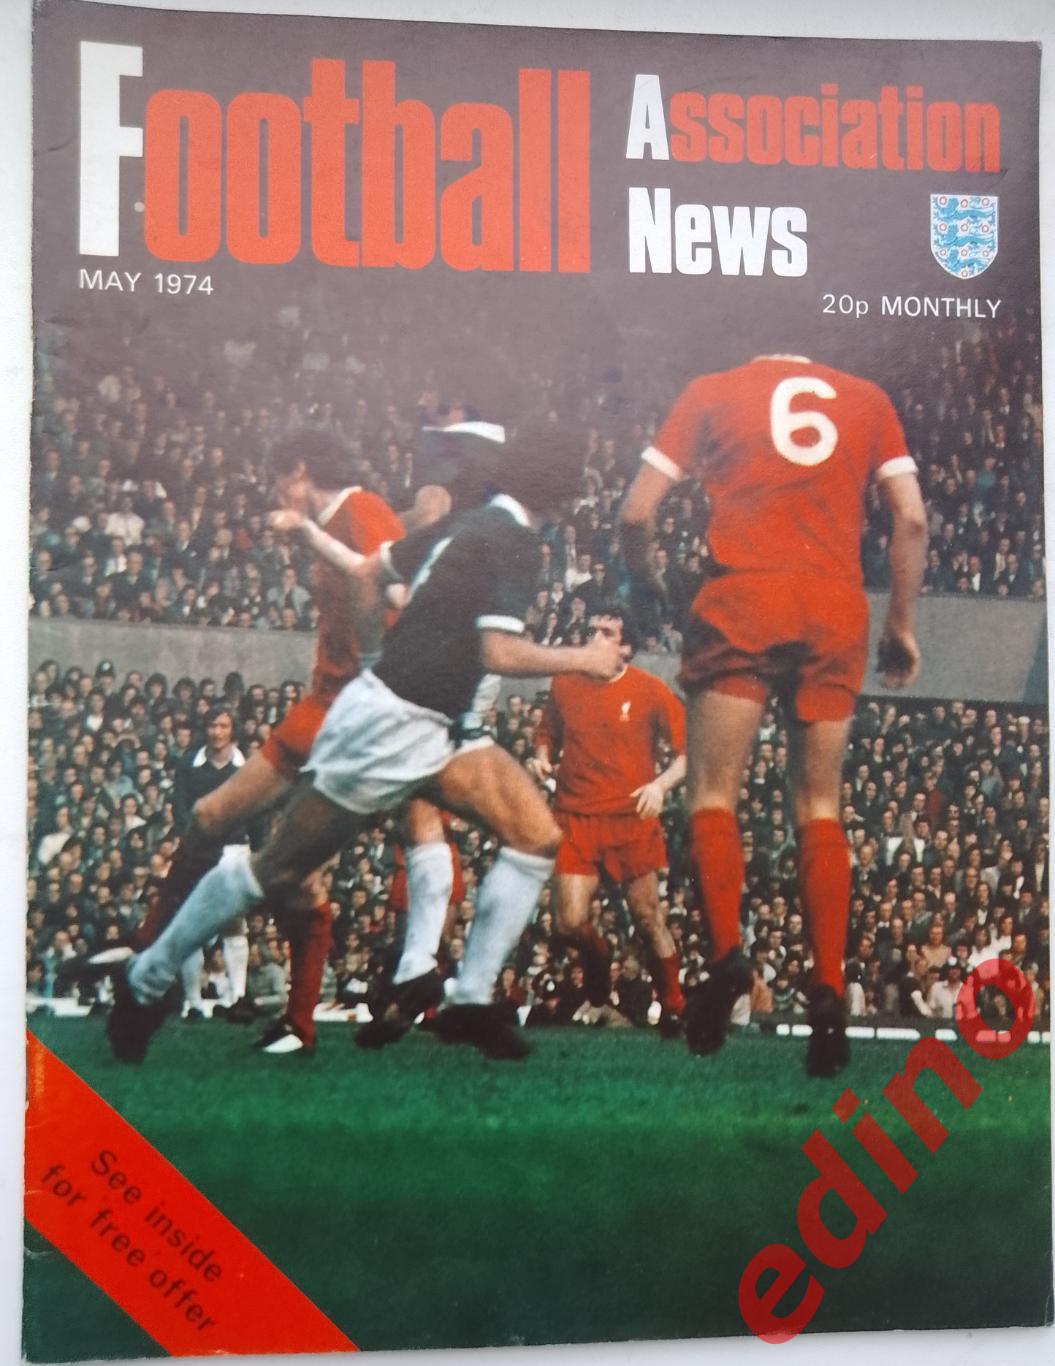 Football As News1974г. Ф. К. Мейдстоун/Ливерпуль